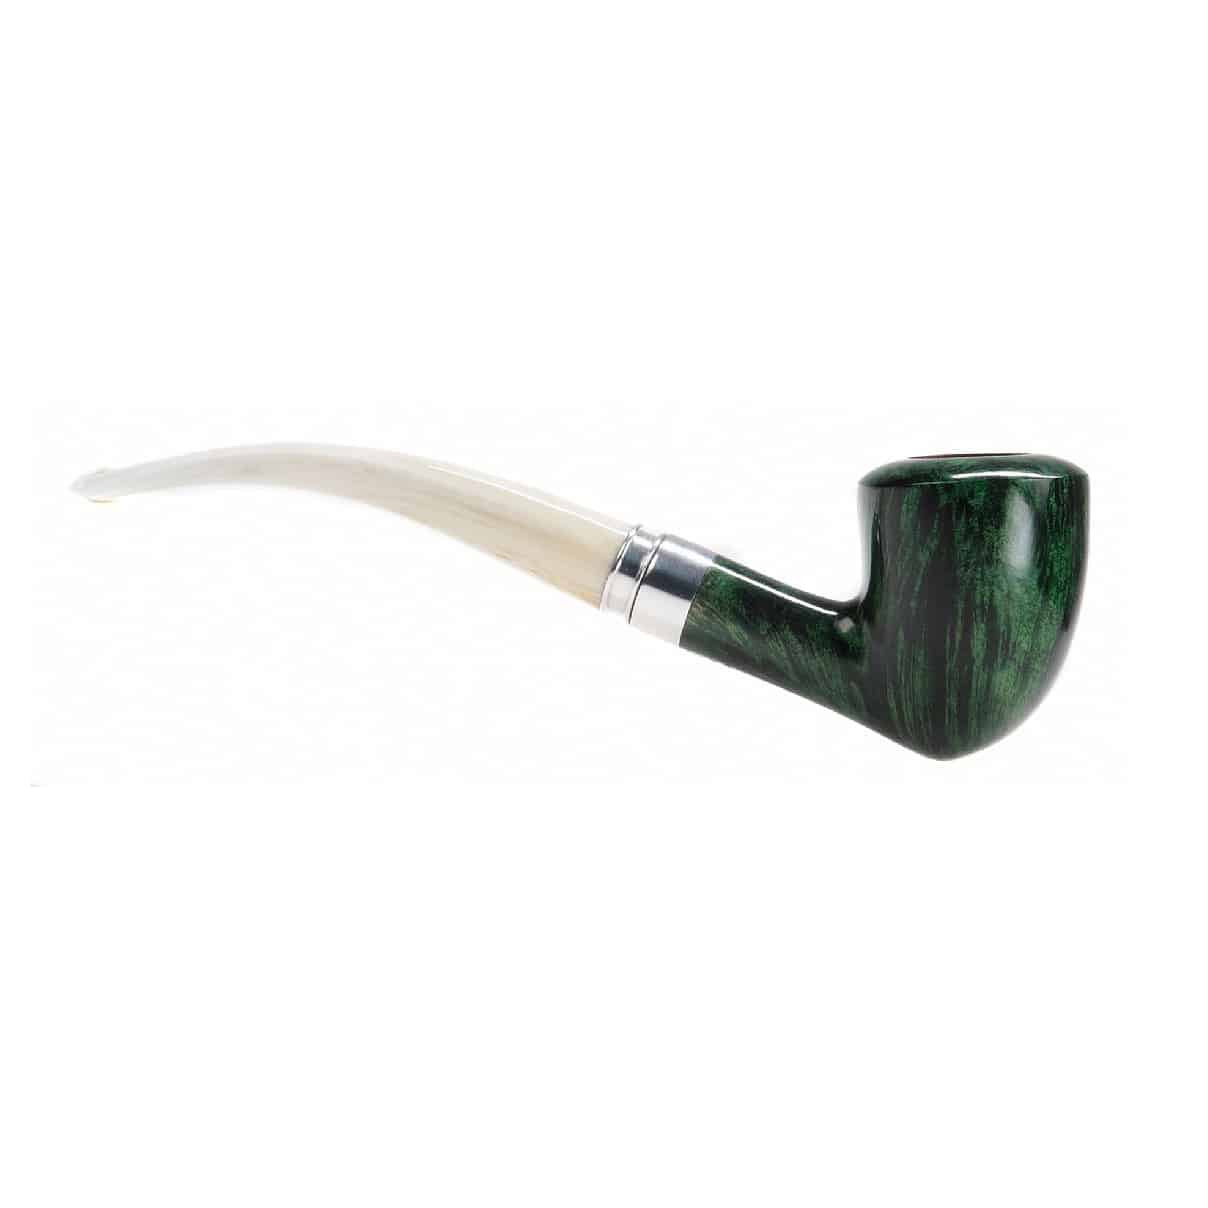 CHACOM - Mojito 95 Πίπα Καπνού ξύλινη, πράσινη